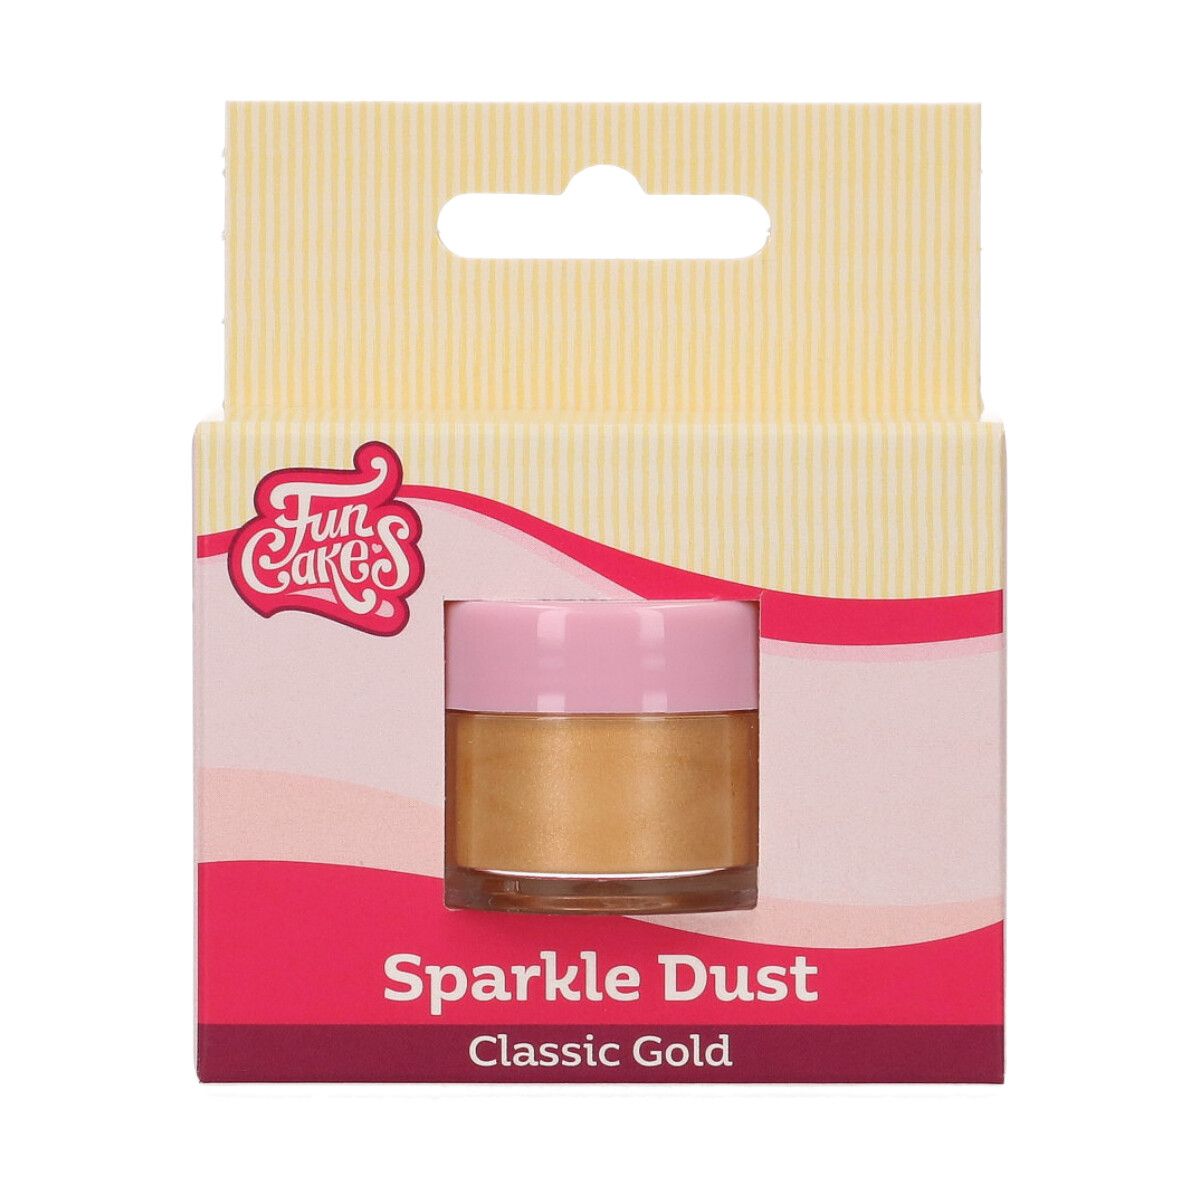 Jedlá glitrová perleťová farba Classic Gold 2,5g, FunCakes, F41130